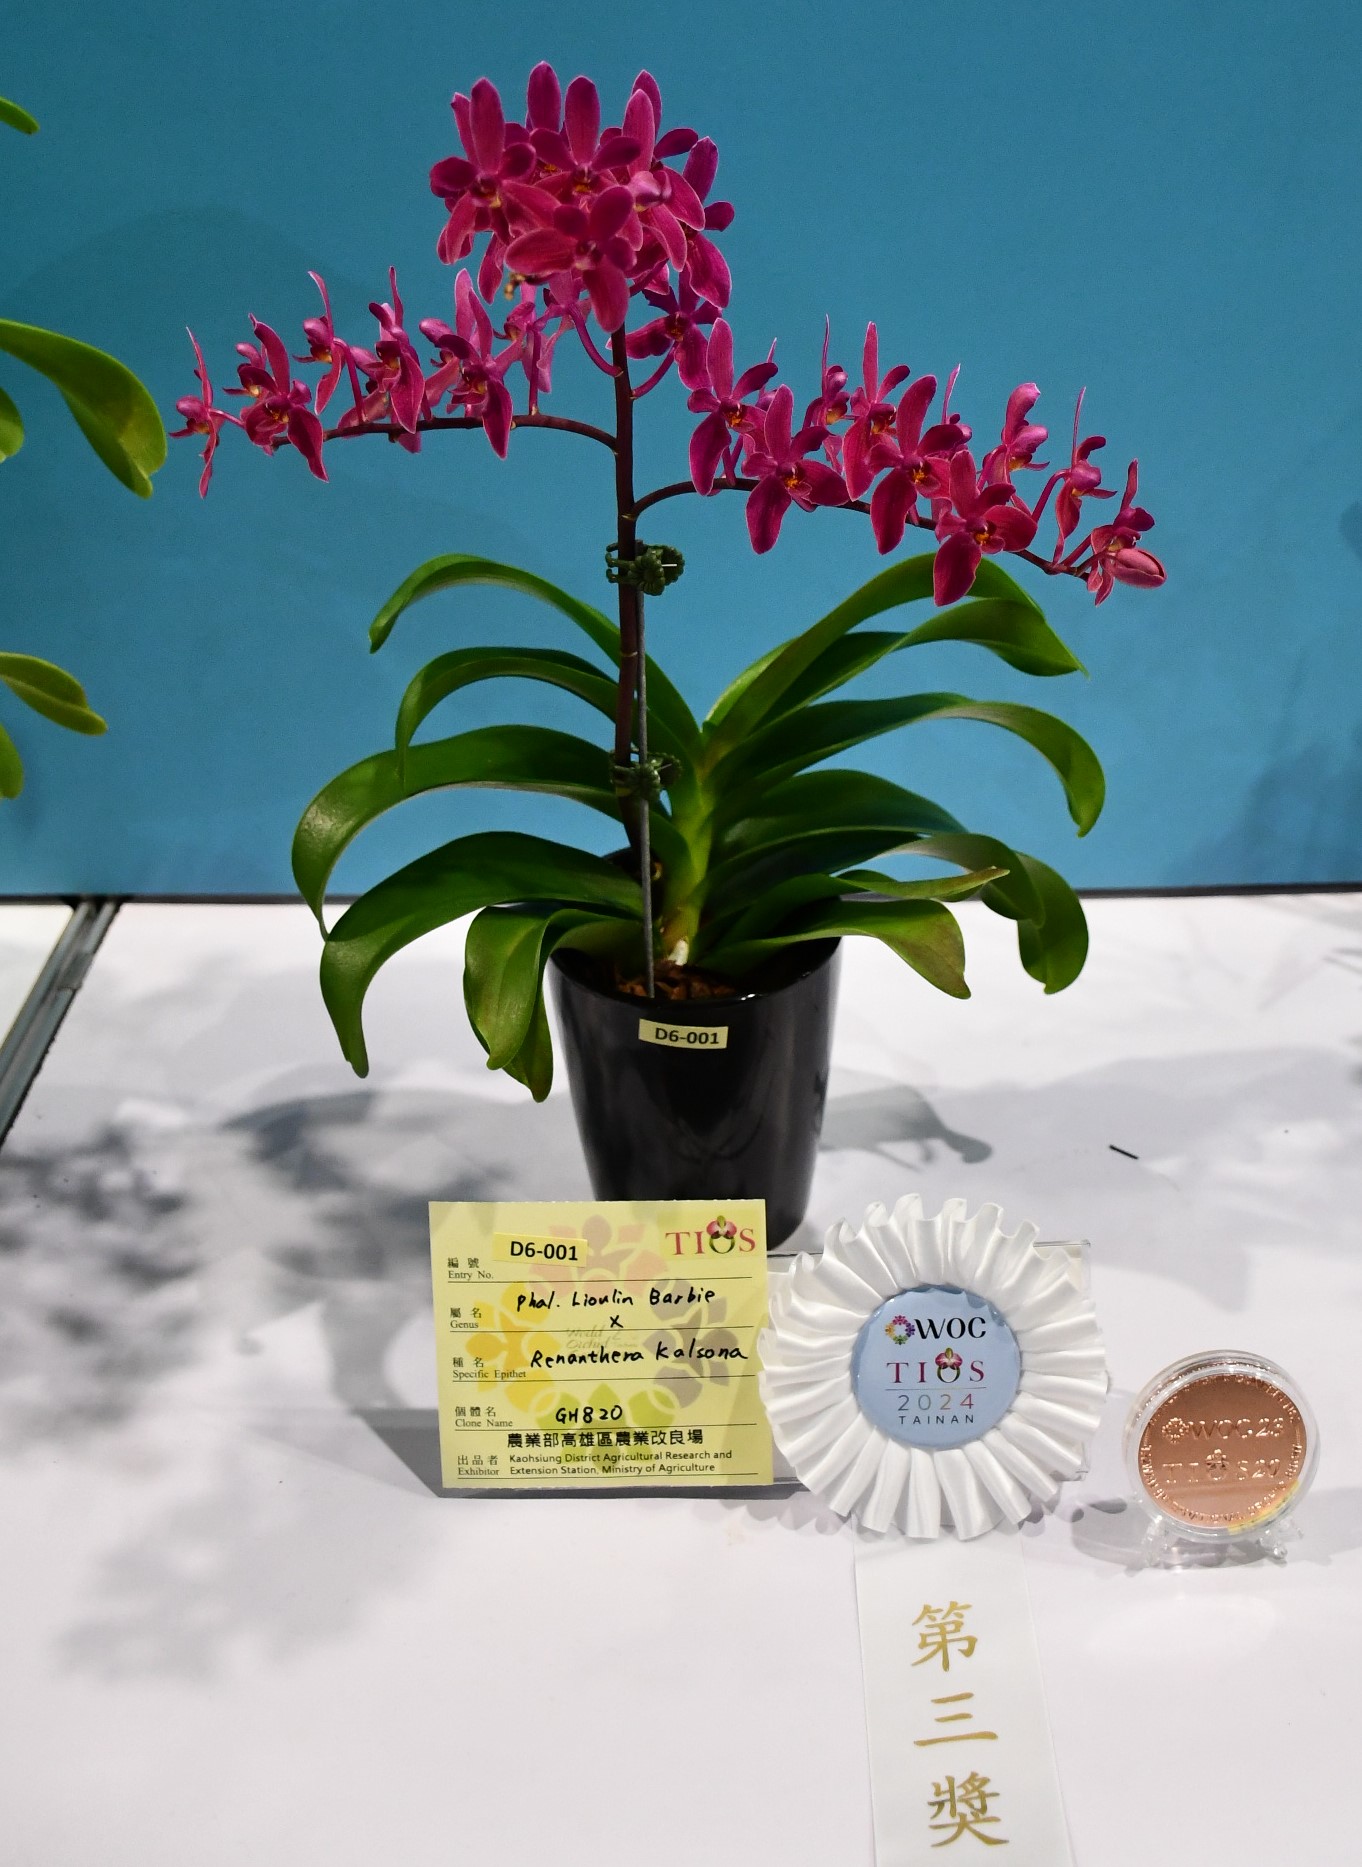 待命名的蝴蝶蘭和腎藥蘭雜交後代獲頒腎藥蘭交配組第三獎及銅牌獎。